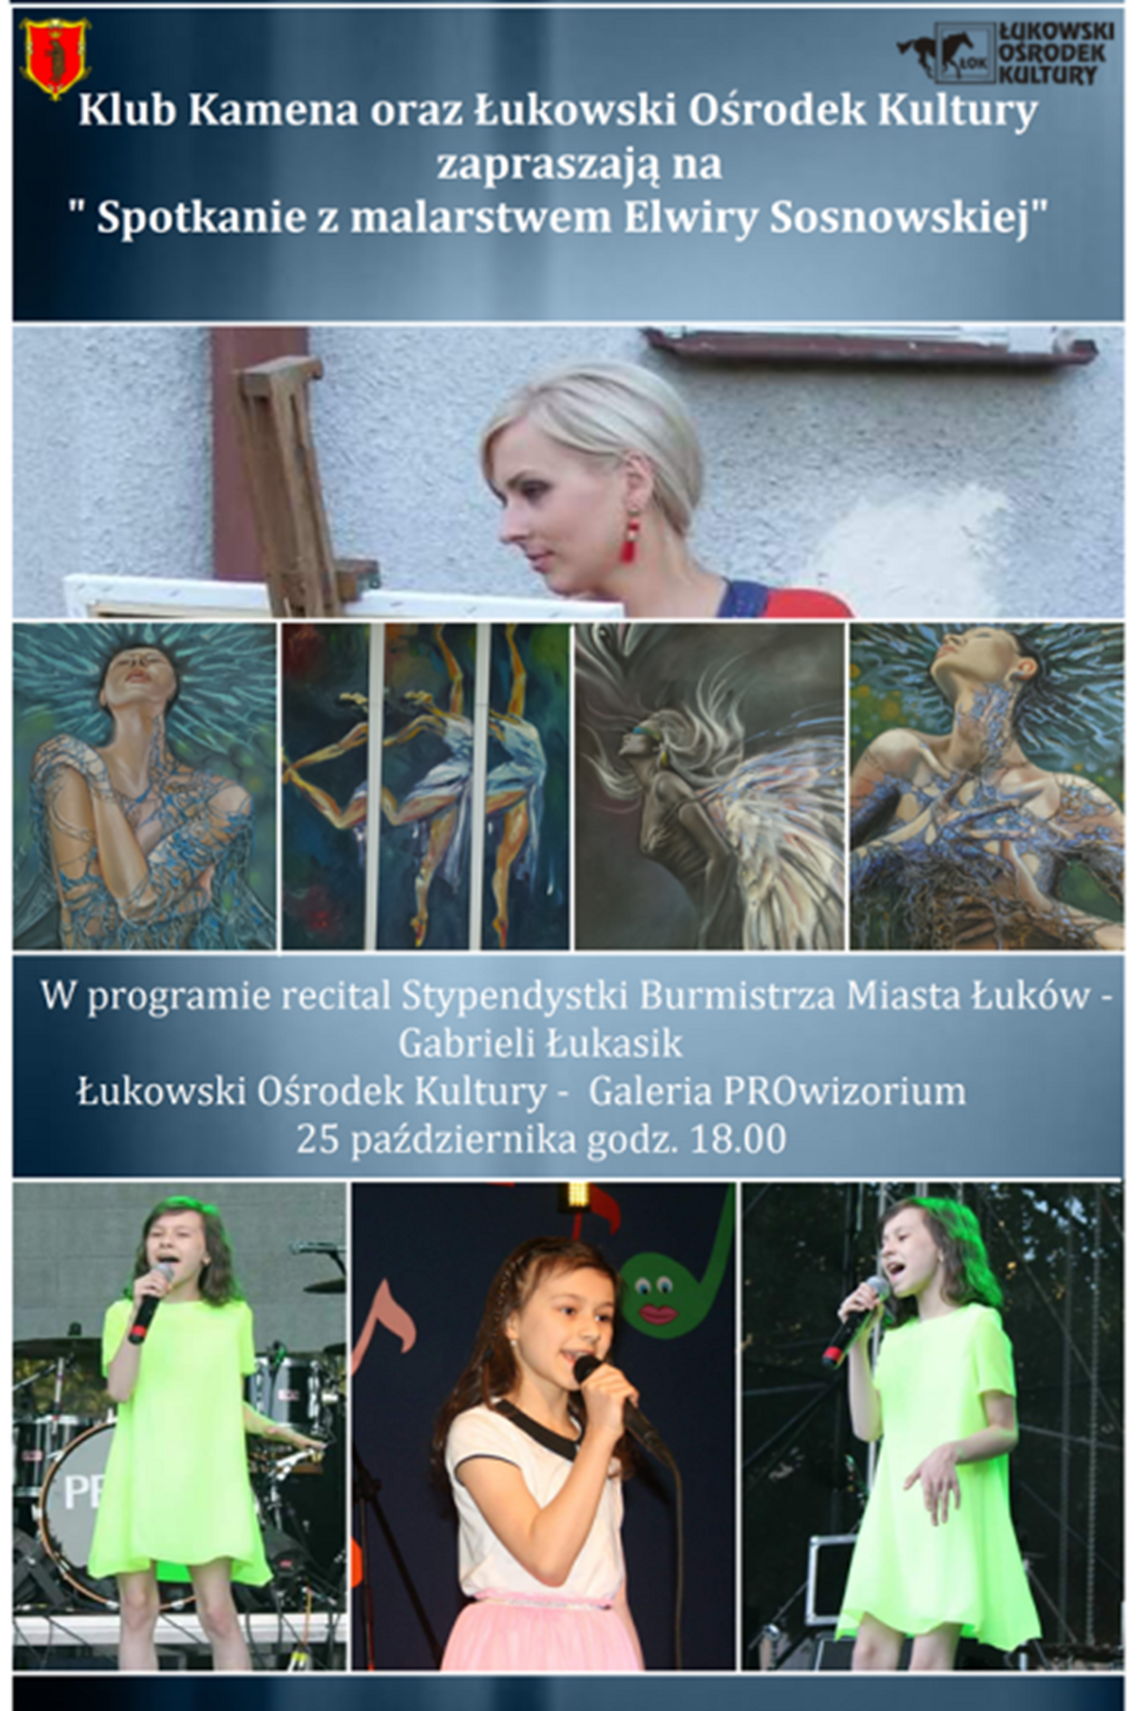 Spotkanie Klubu Kamena oraz recital stypendialny Gabrysi Łukasik w Łukowskim Ośrodku Kultury